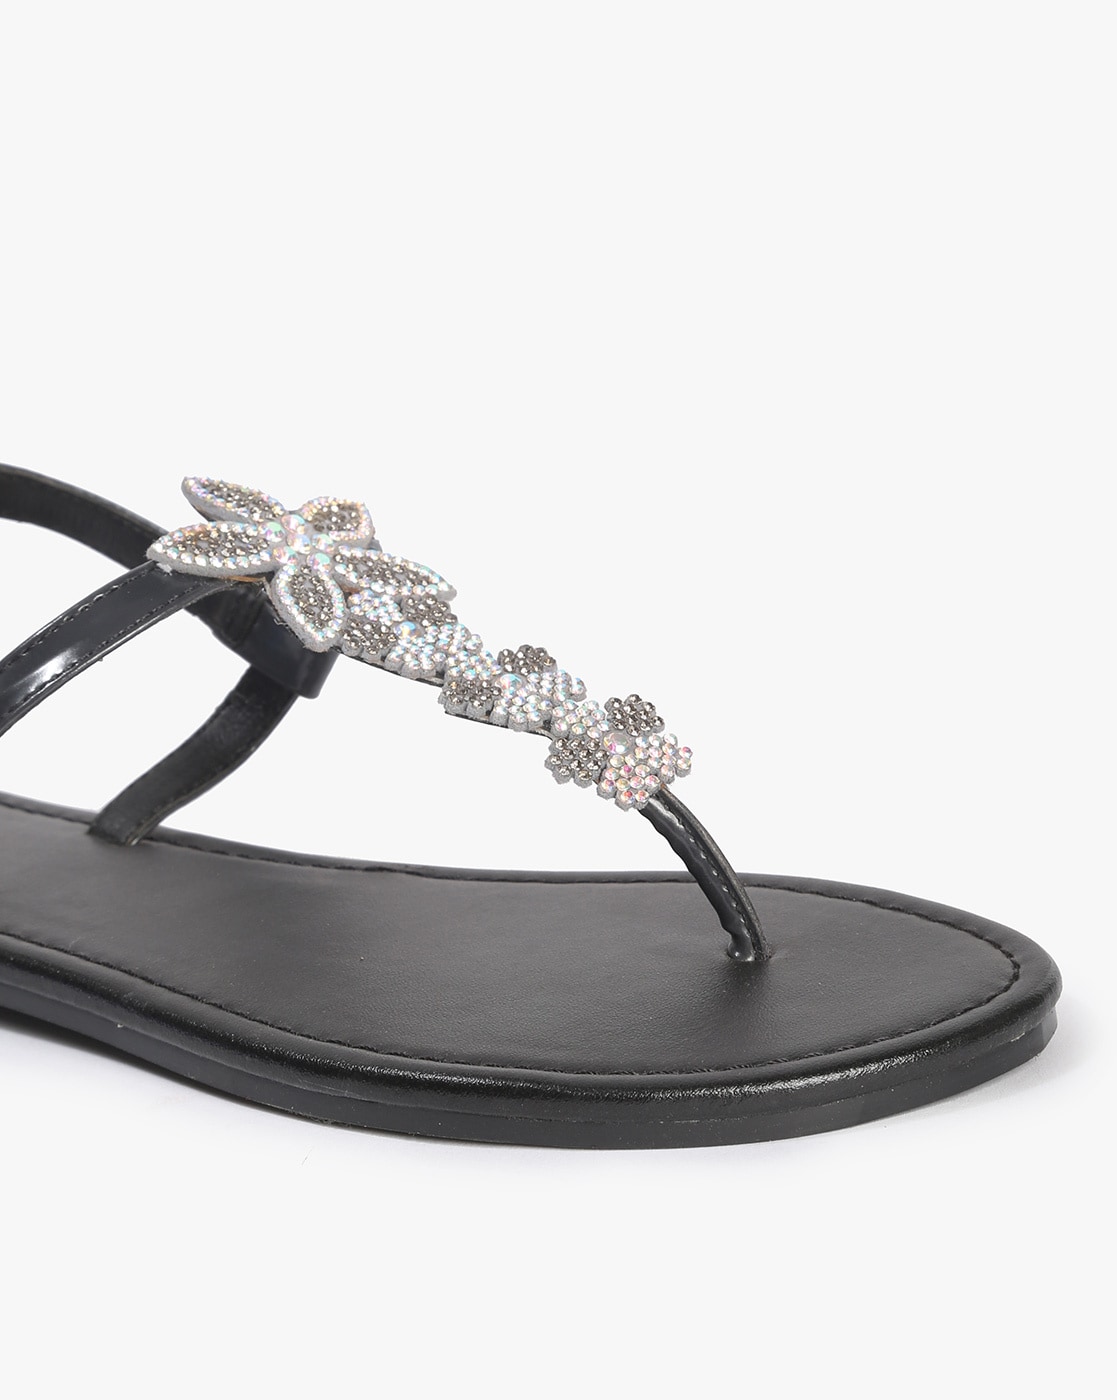 Albano Women's 4694 Seta Flat Dressy Swarovski Crystal Sandals White/Black